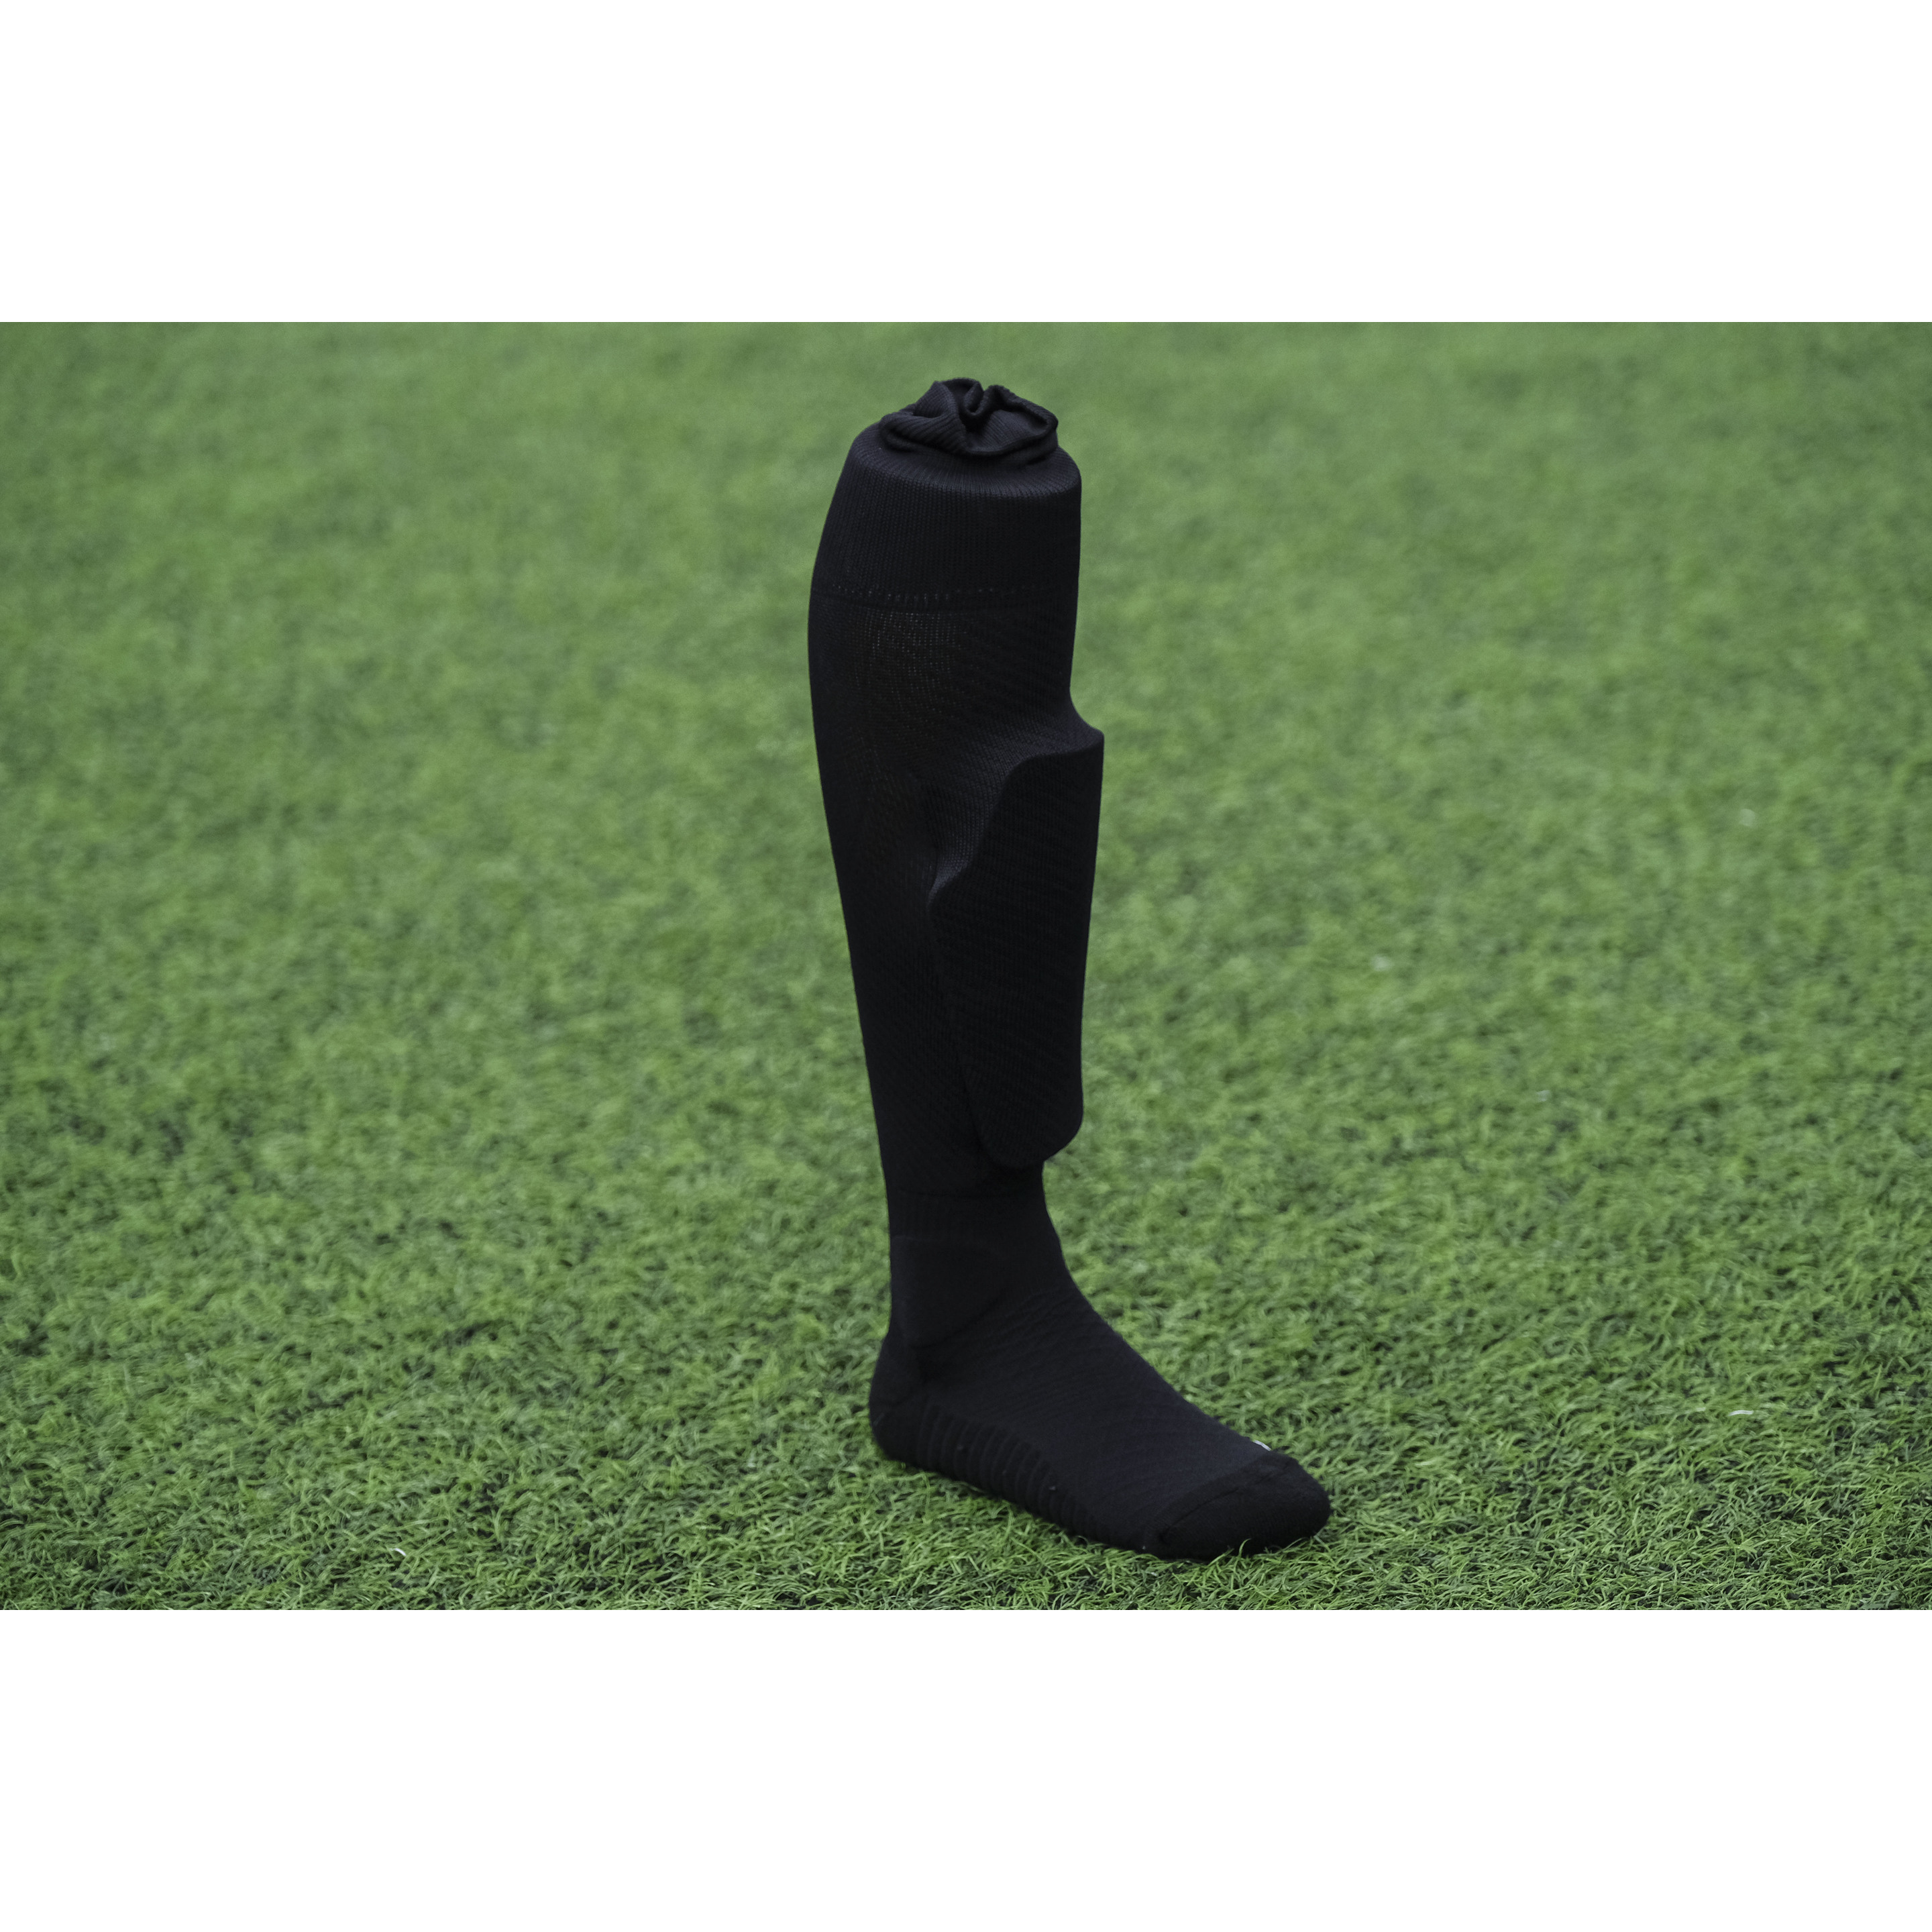 Meia Sockapro De Futebol - Preto - Fixação patenteada para caneleiras | Sport Zone MKP